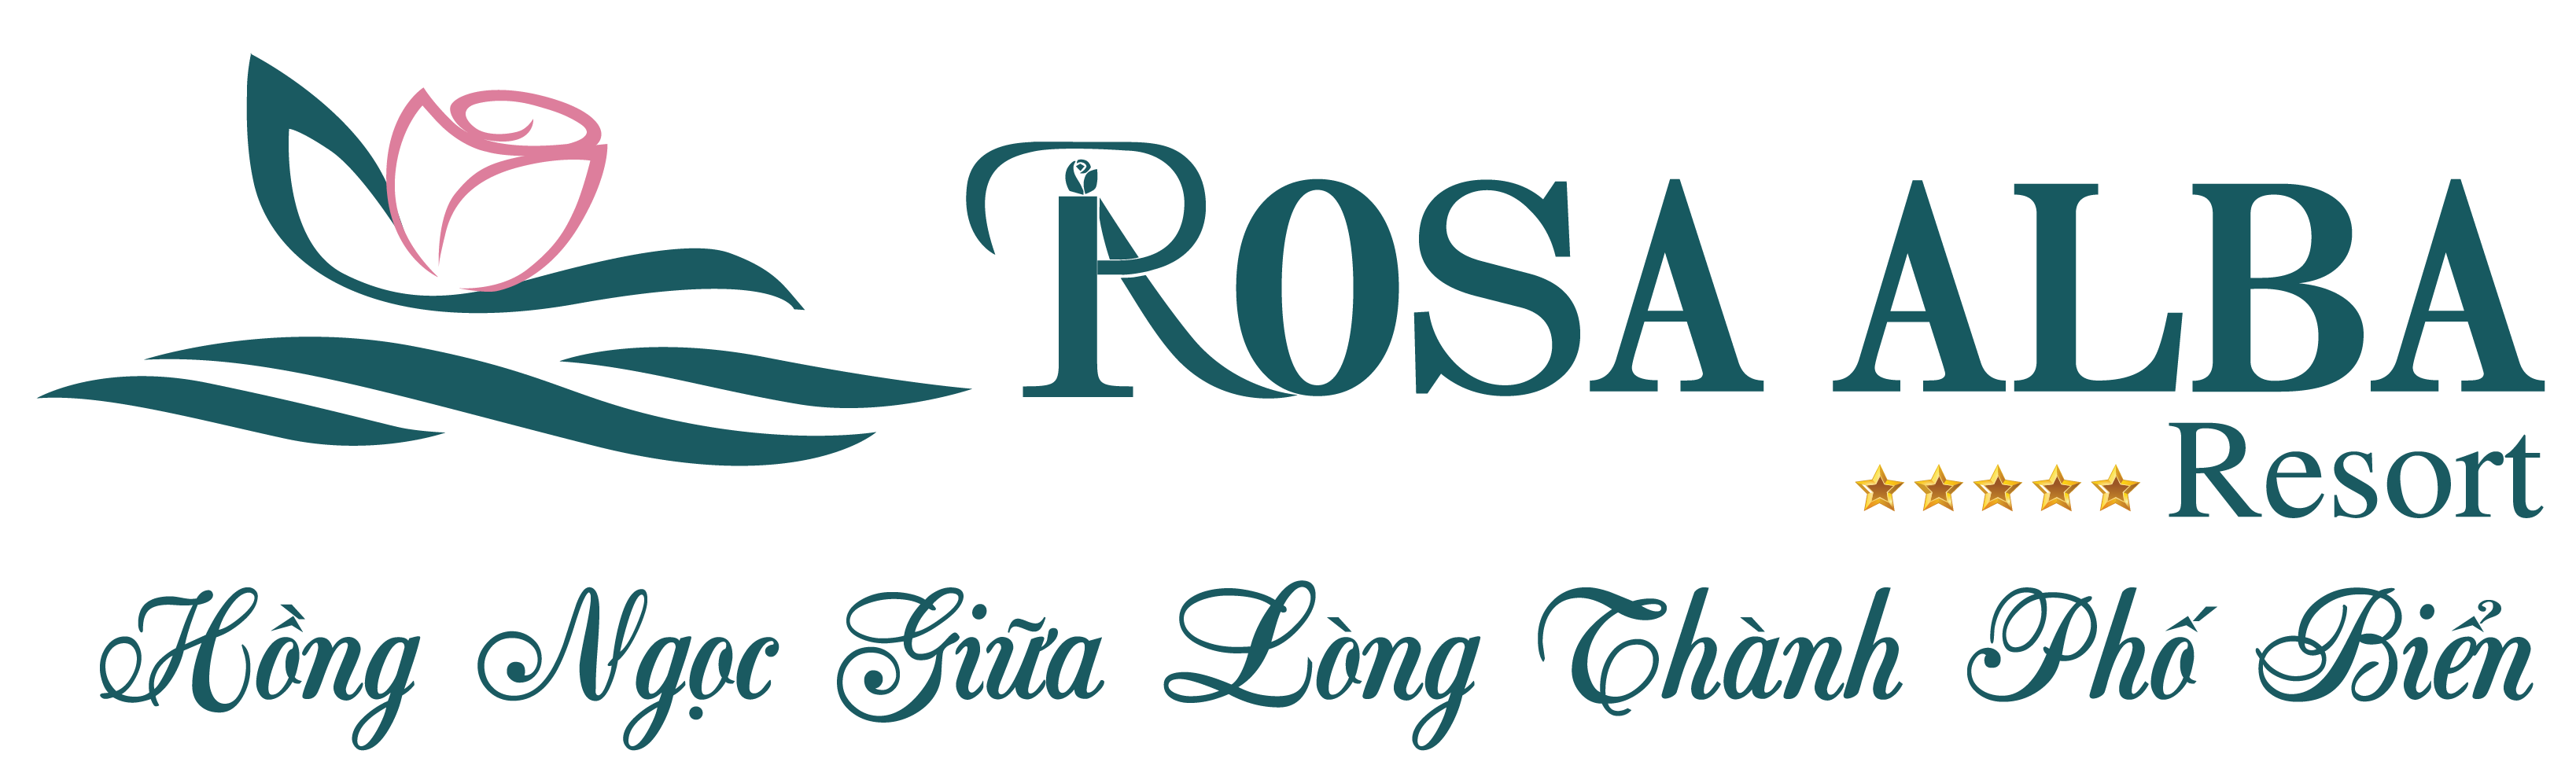 Rosa Alba Resort